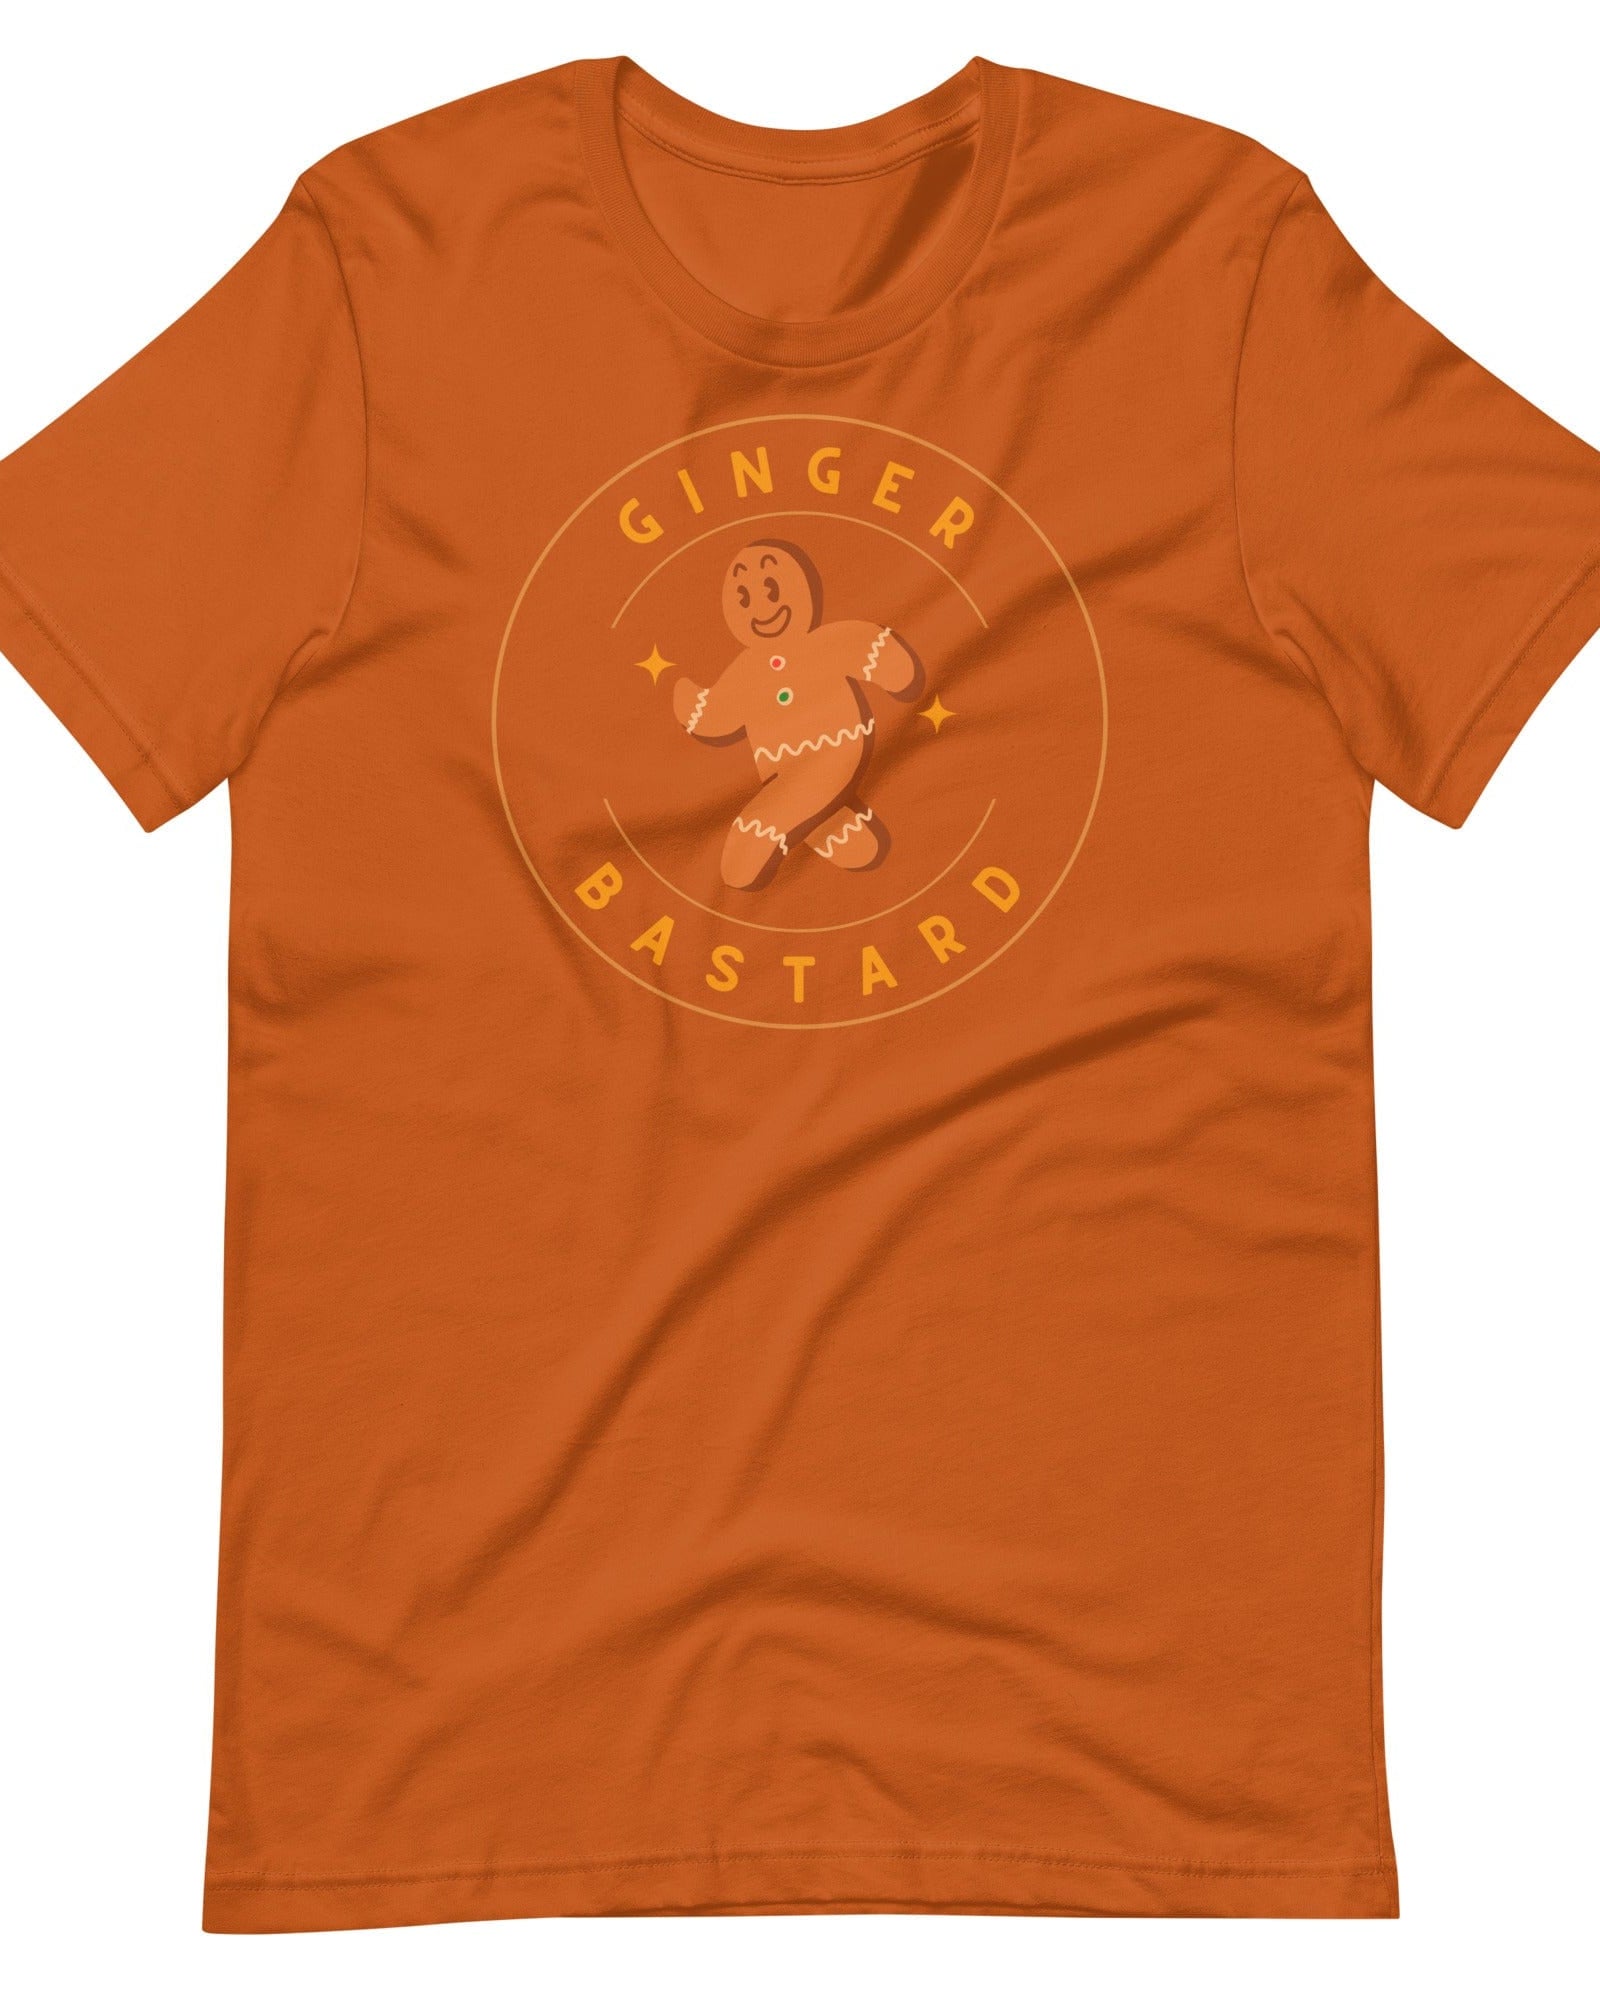 Ginger Bastard T-shirt Autumn / S Shirts & Tops Jolly & Goode